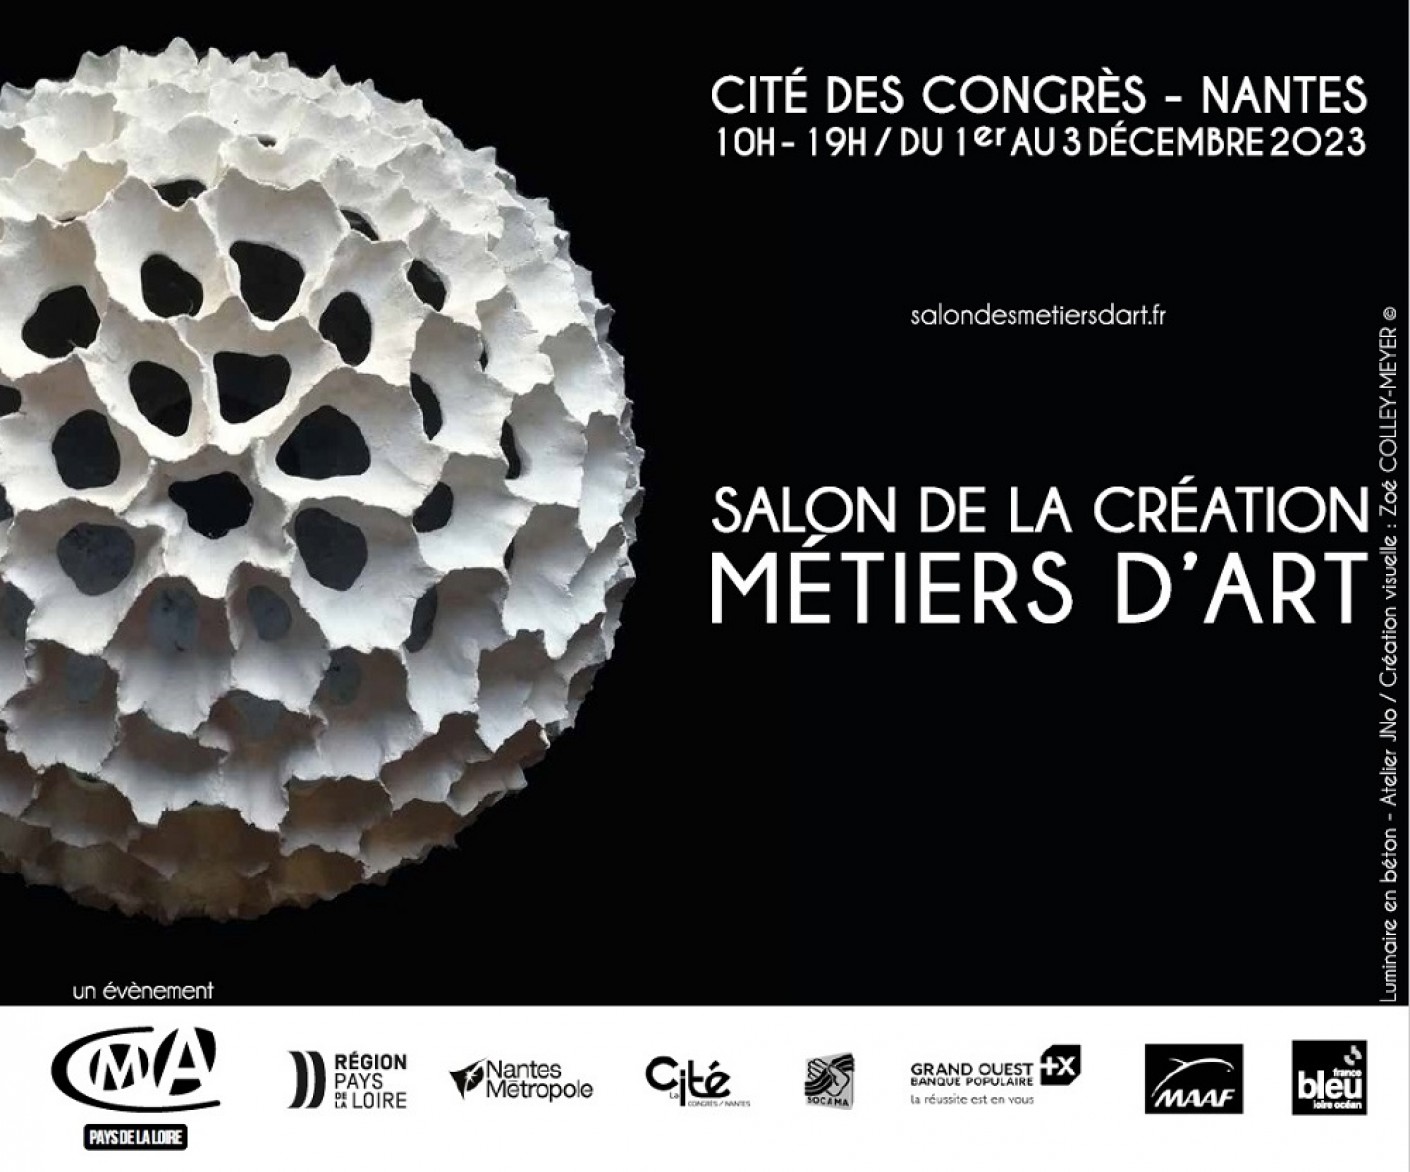 Salon de la Création Métiers d'Art - Cité des Congrès à Nantes - Du 1er au 3 décembre 2023